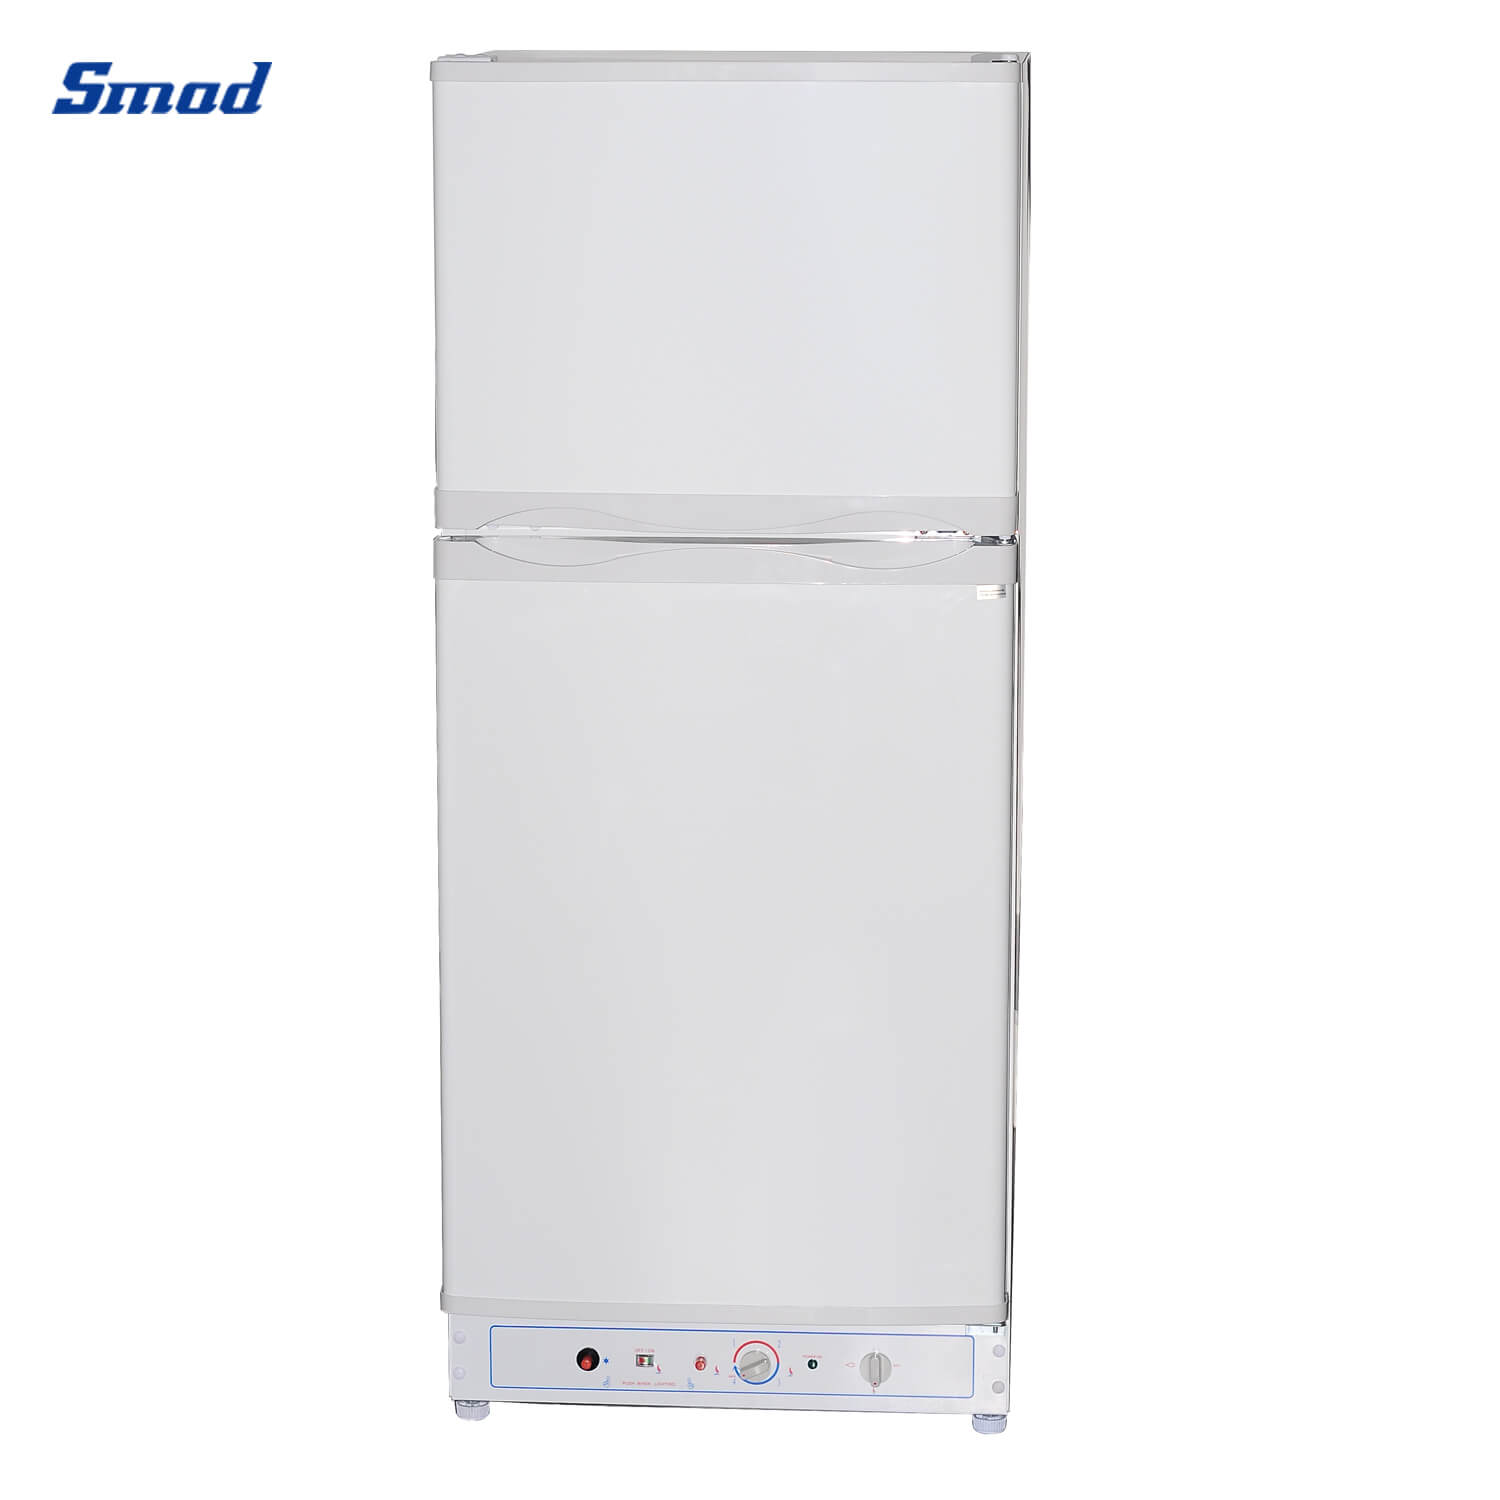 
Smad Gas Top Freezer Double Door Fridge Freezer with no noise